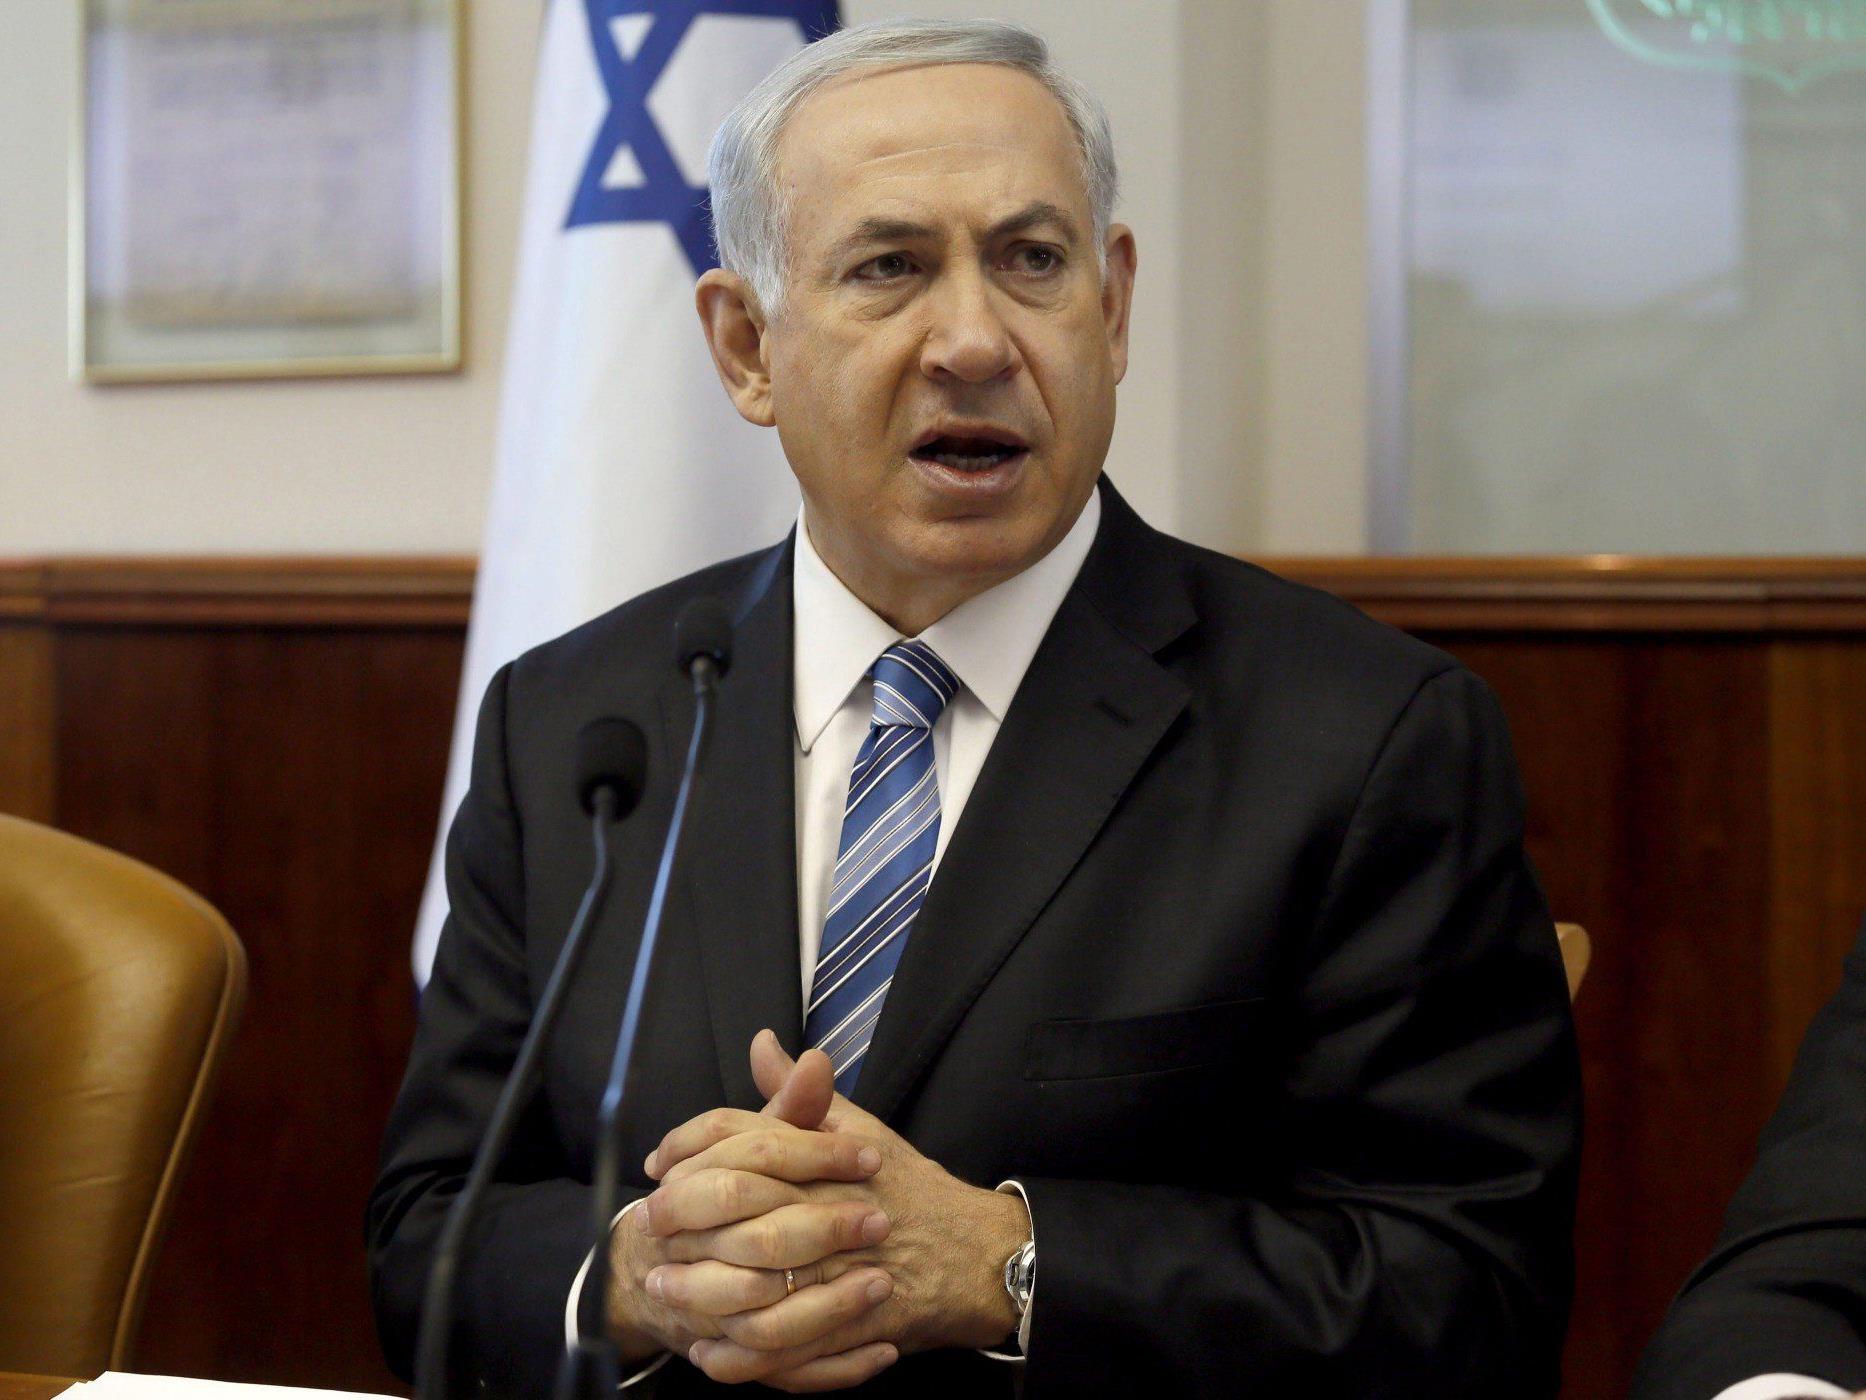 Beschluss erfolgte am Nachmittag durch das Sicherheitskabinett unter Ministerpräsident Benjamin Netanyahu.